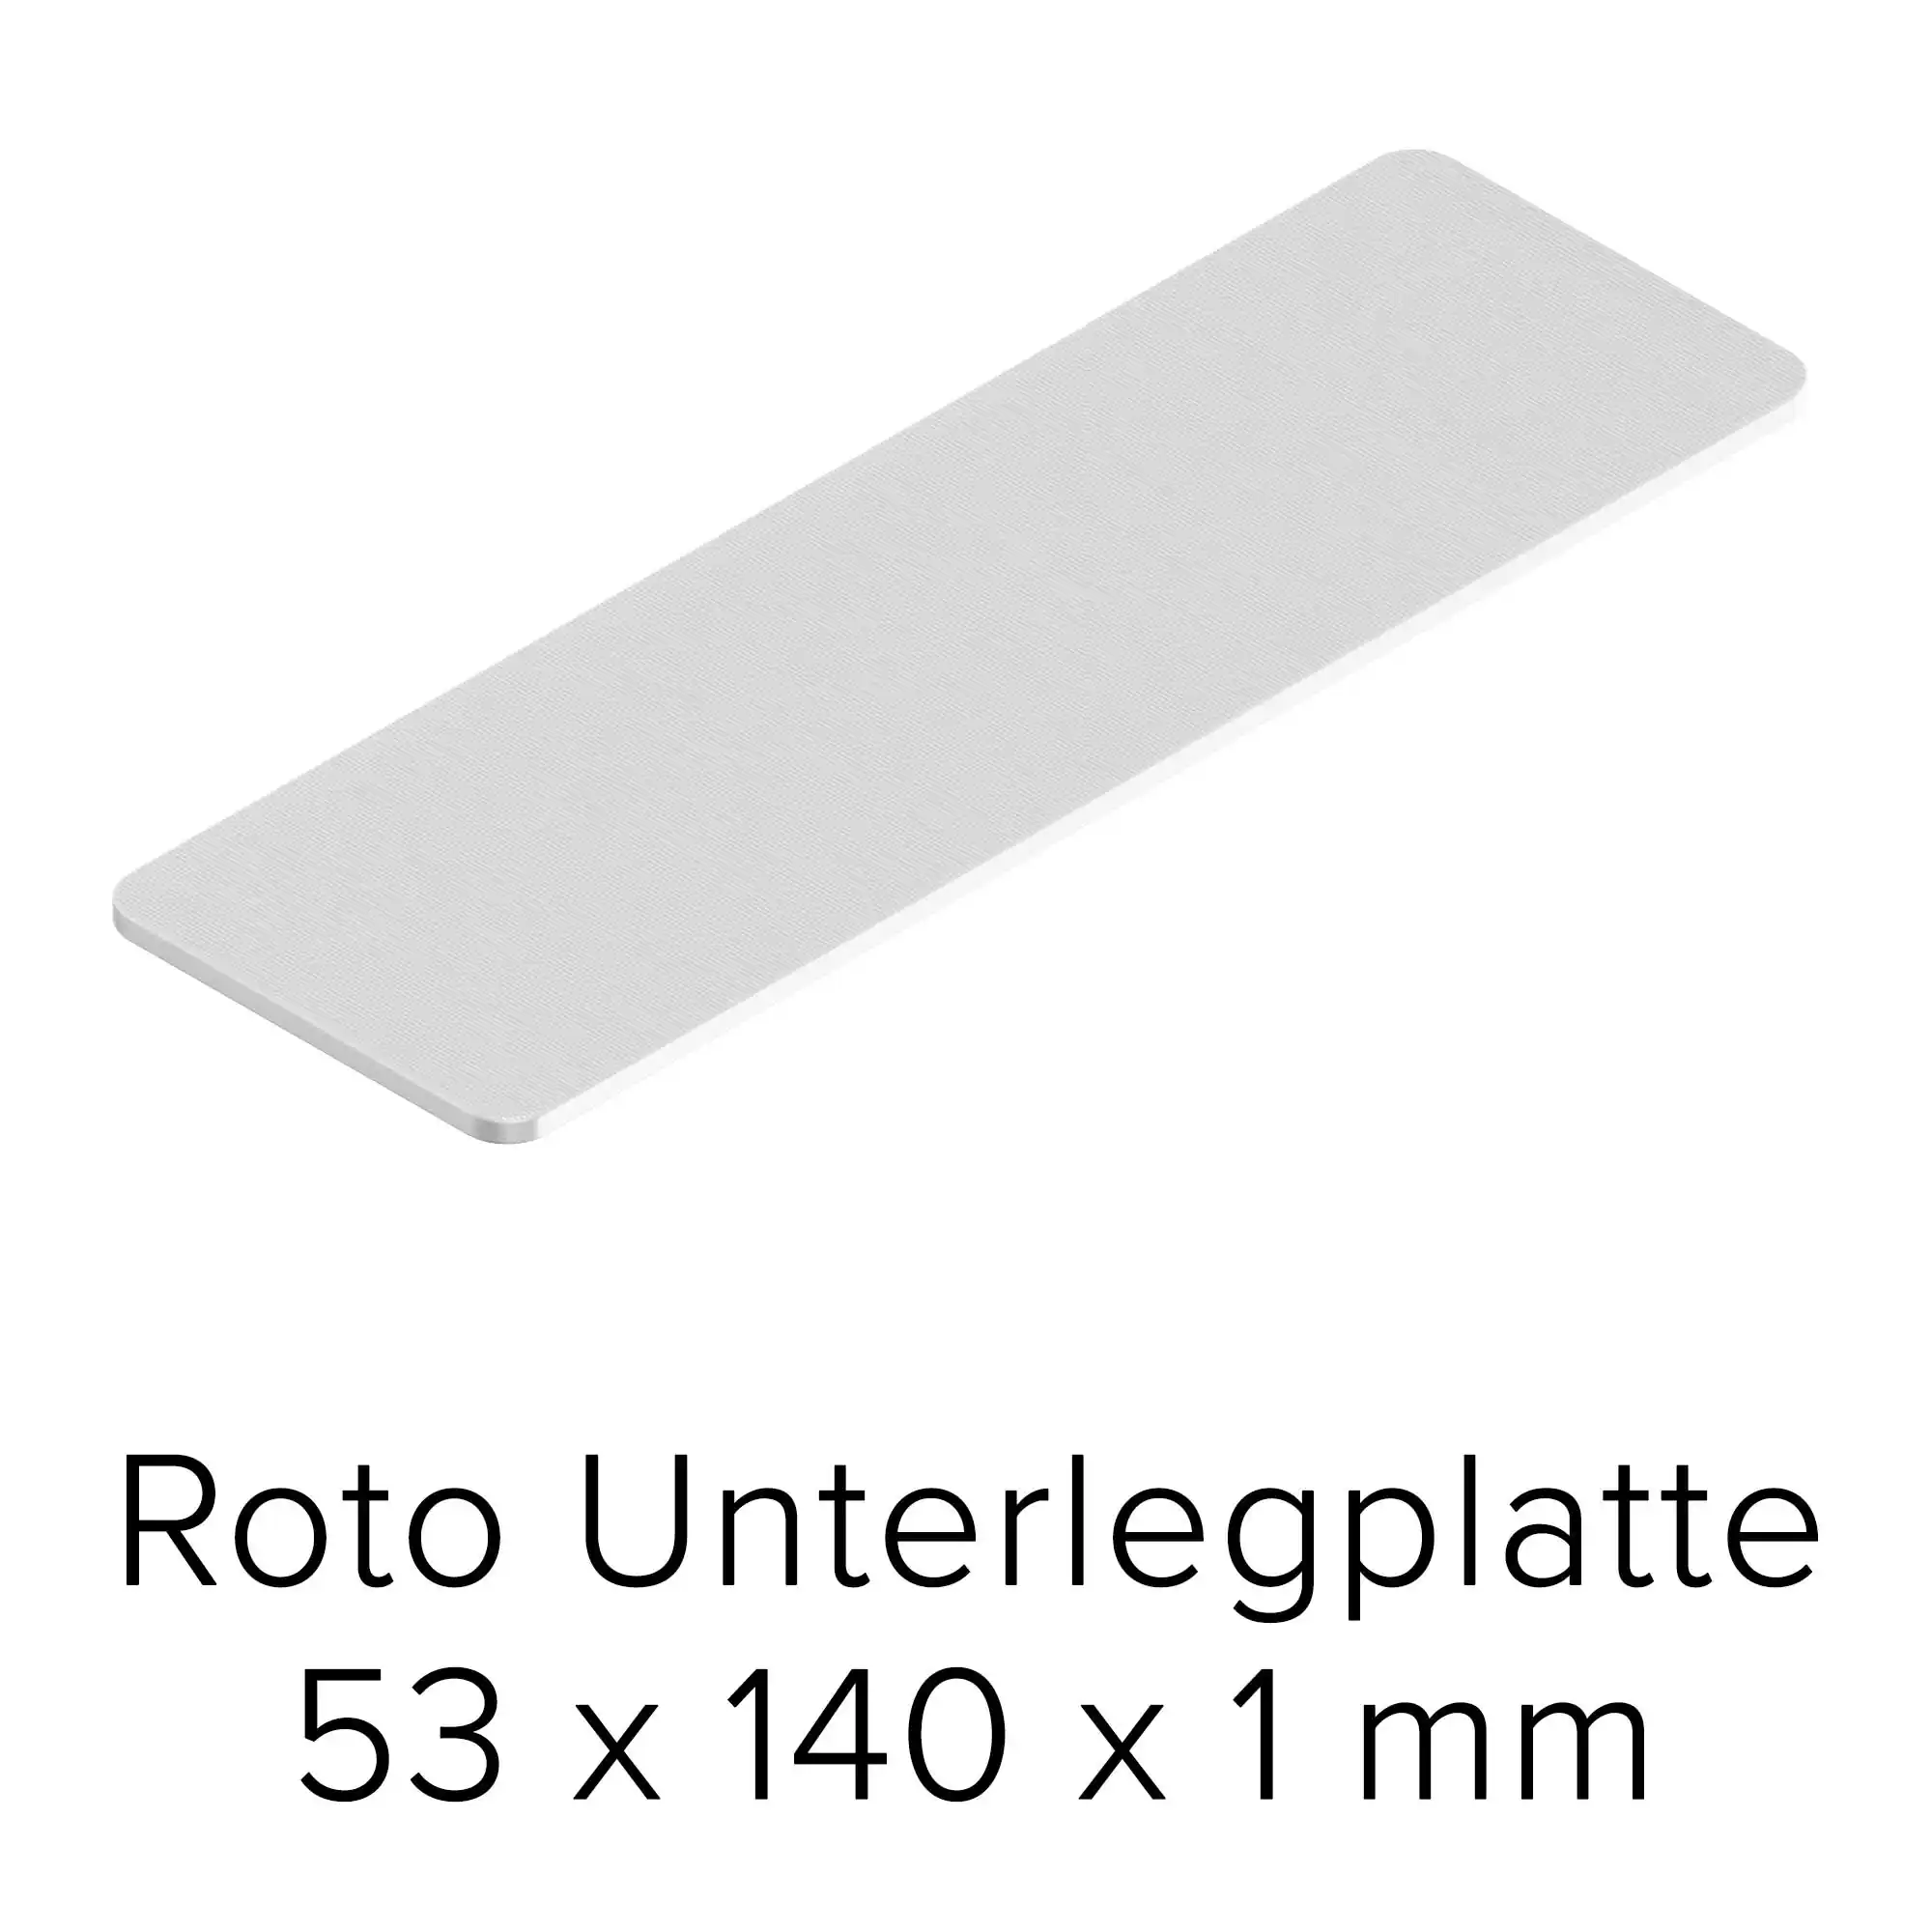 Roto Unterlegplatte 53 x 140 x 1 mm